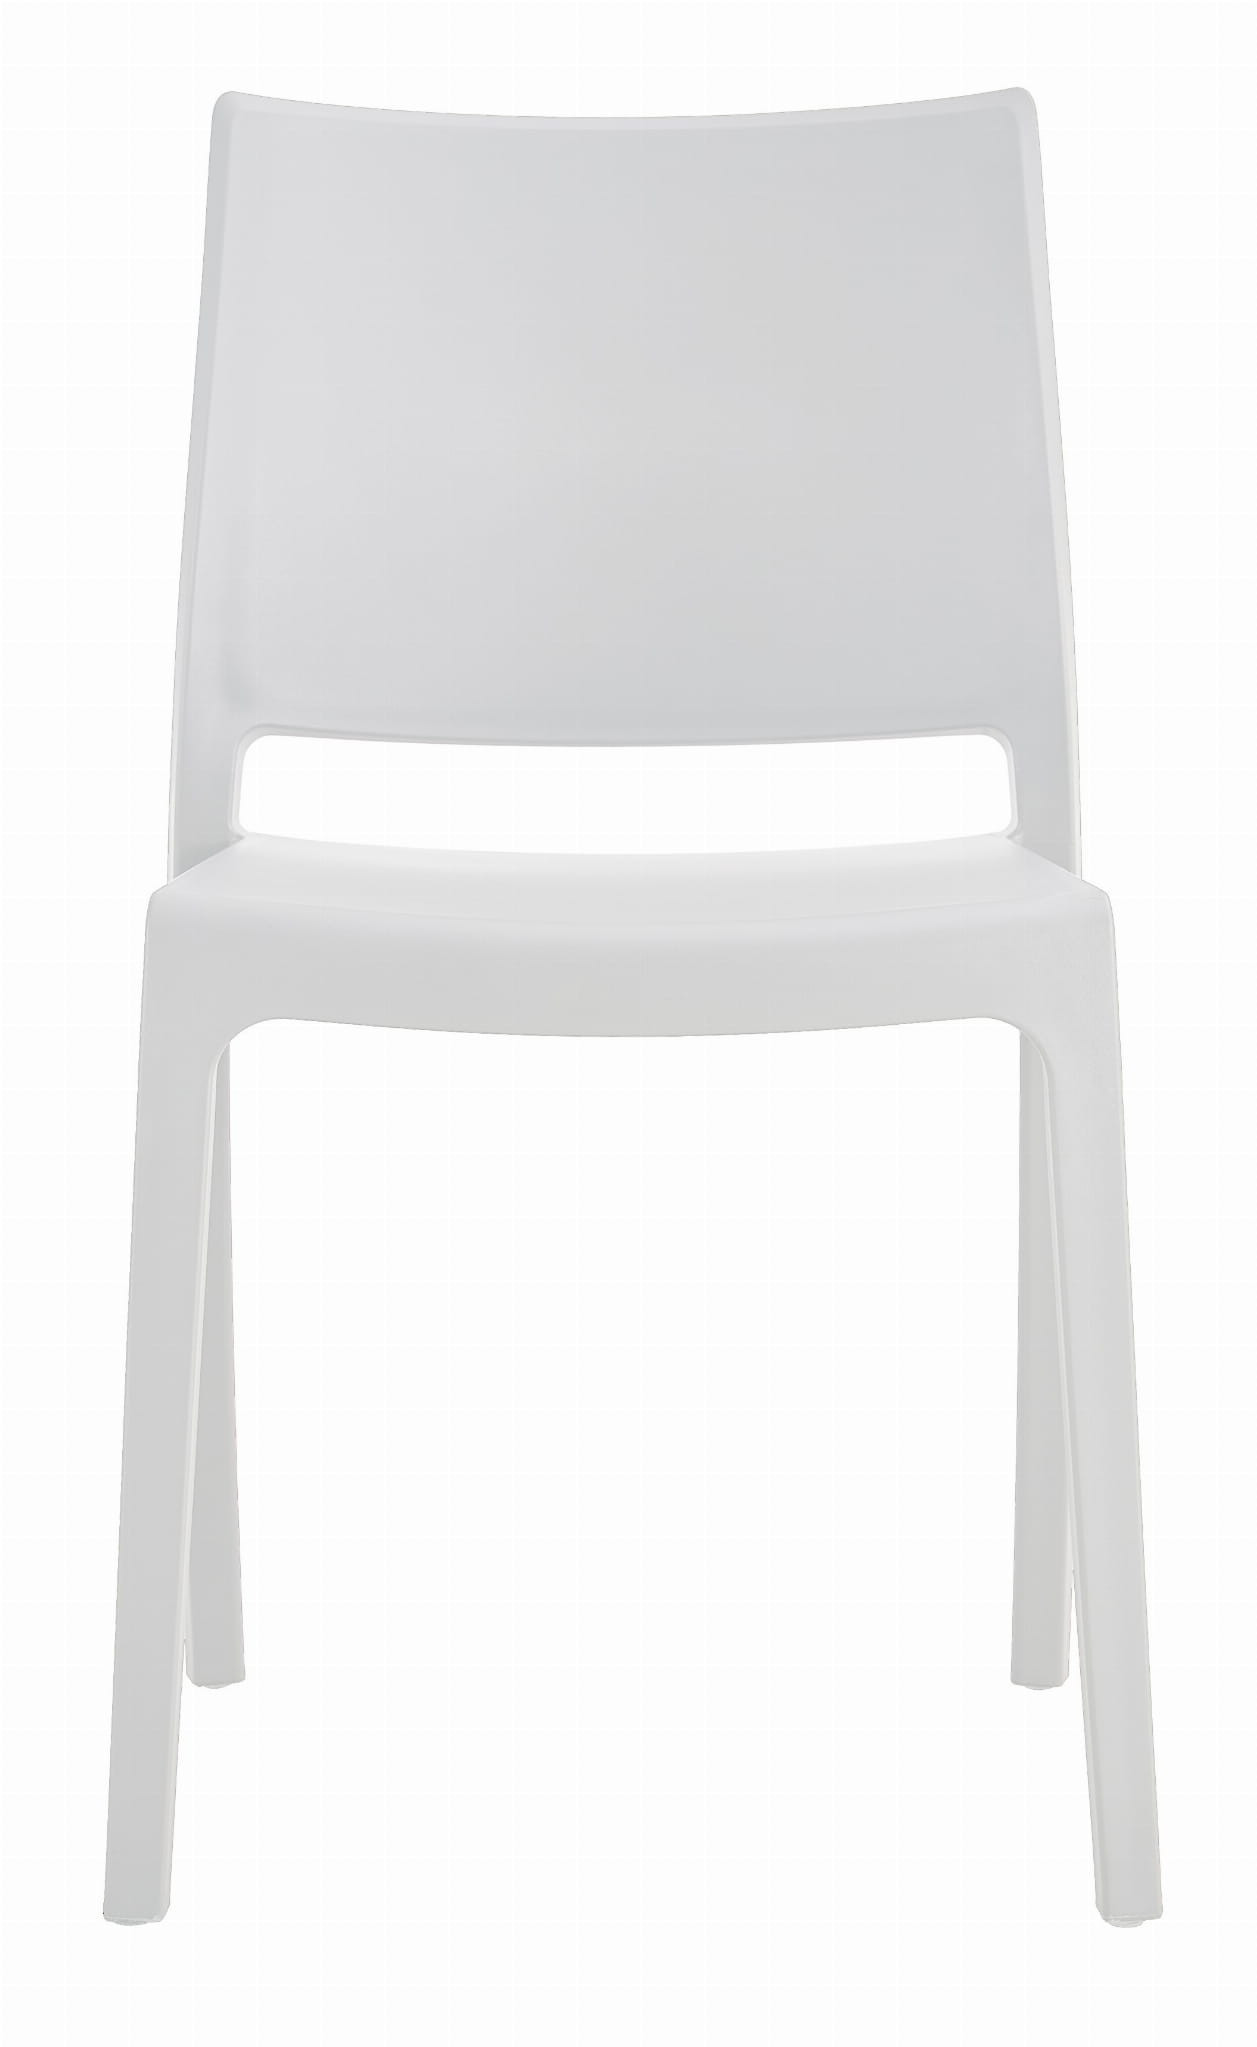 Set dvou židlí KLEM bílé (2ks)